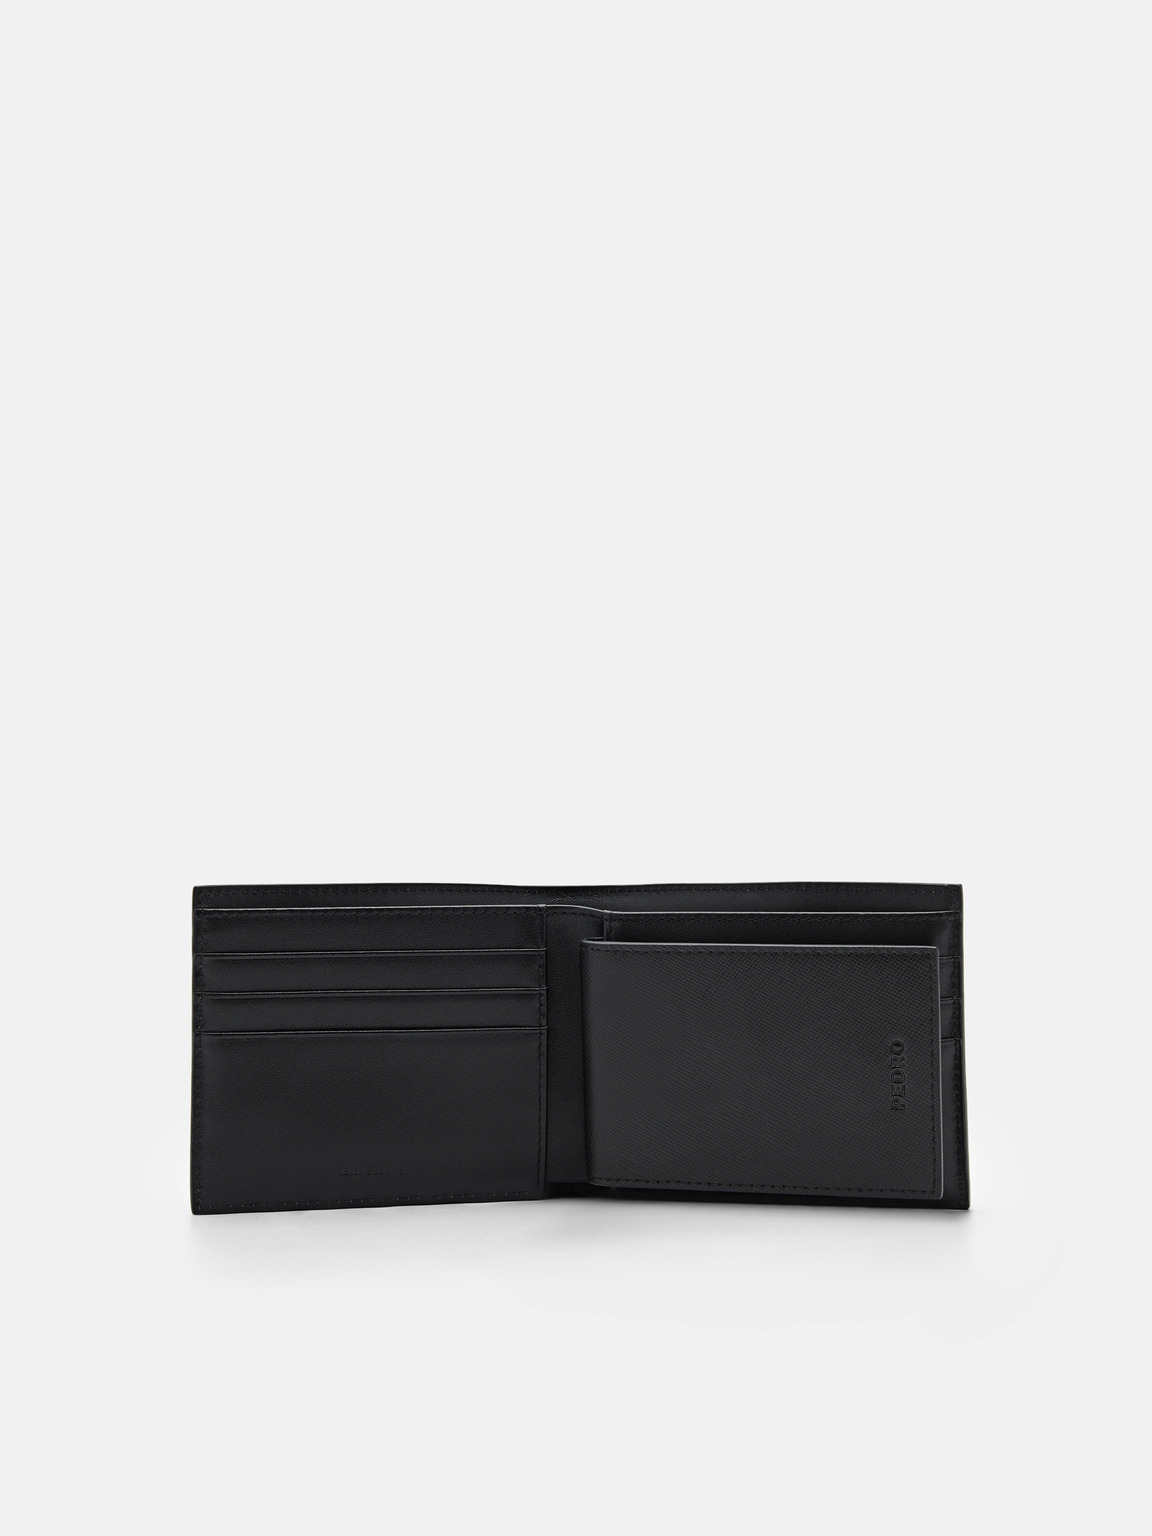 Leather Bi-Fold Insert Wallet, Black